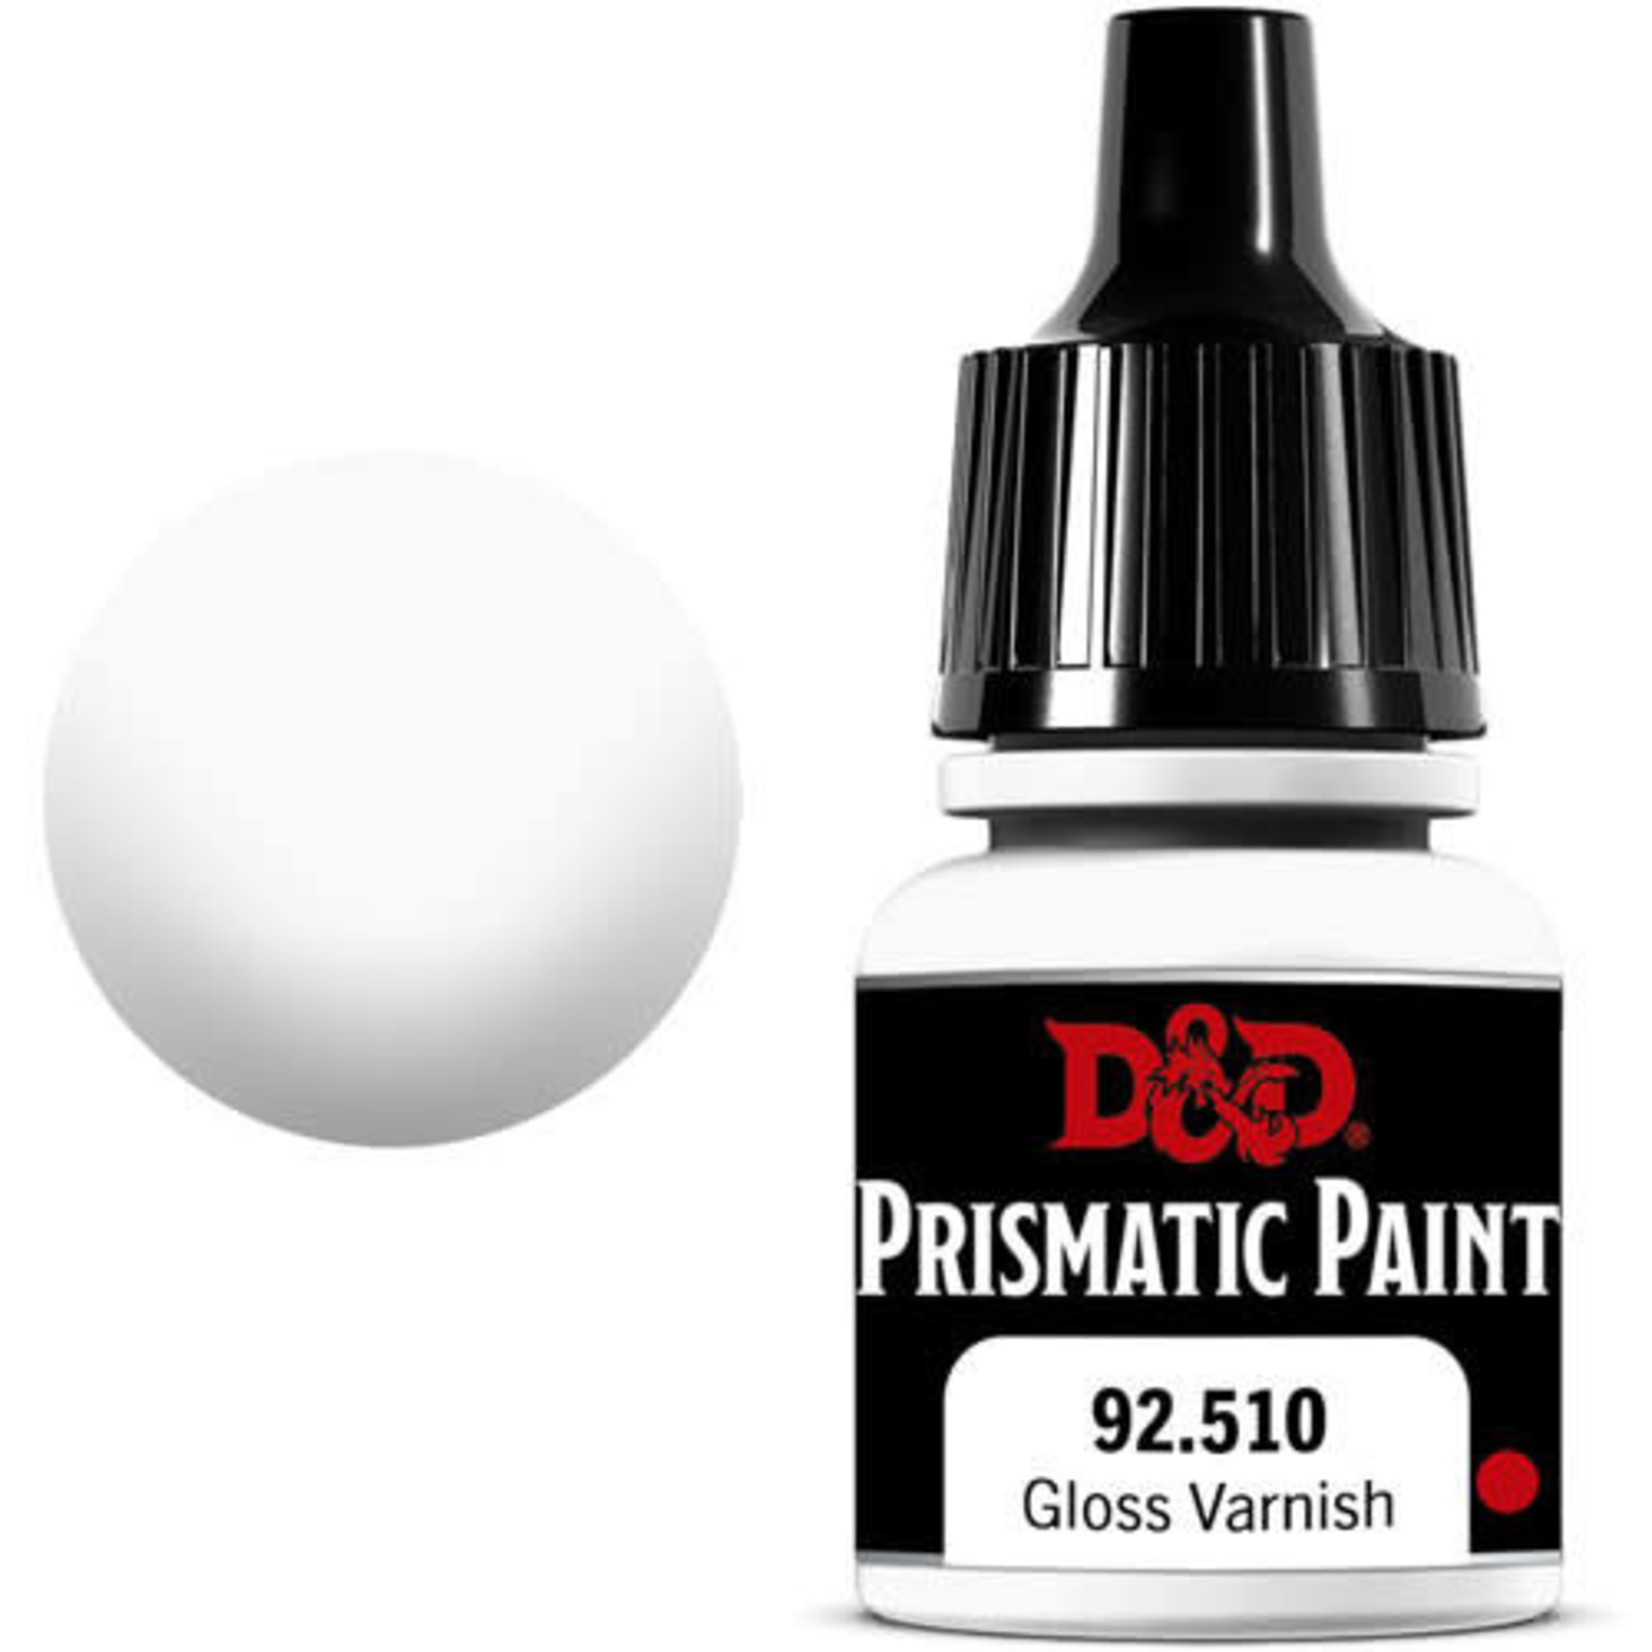 Wiz Kids D&D Prismatic Paint: Gloss Varnish